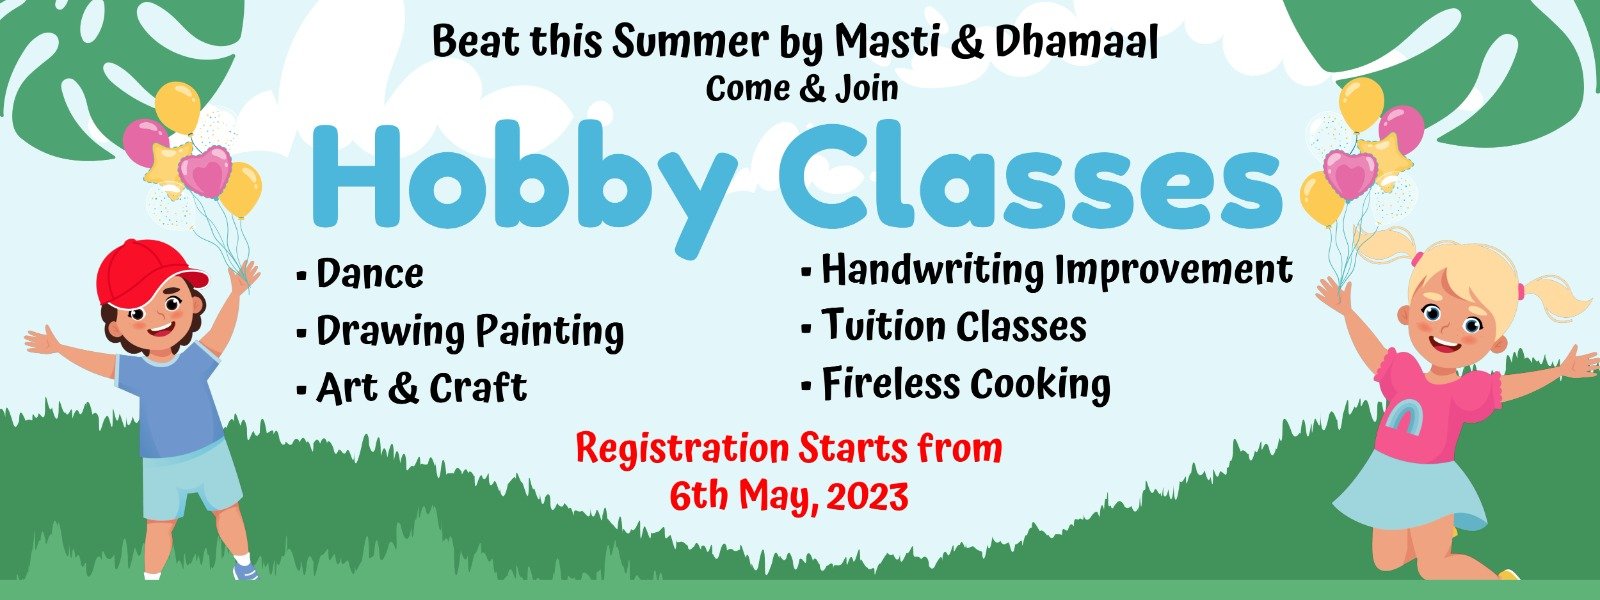 hobby classes for kids